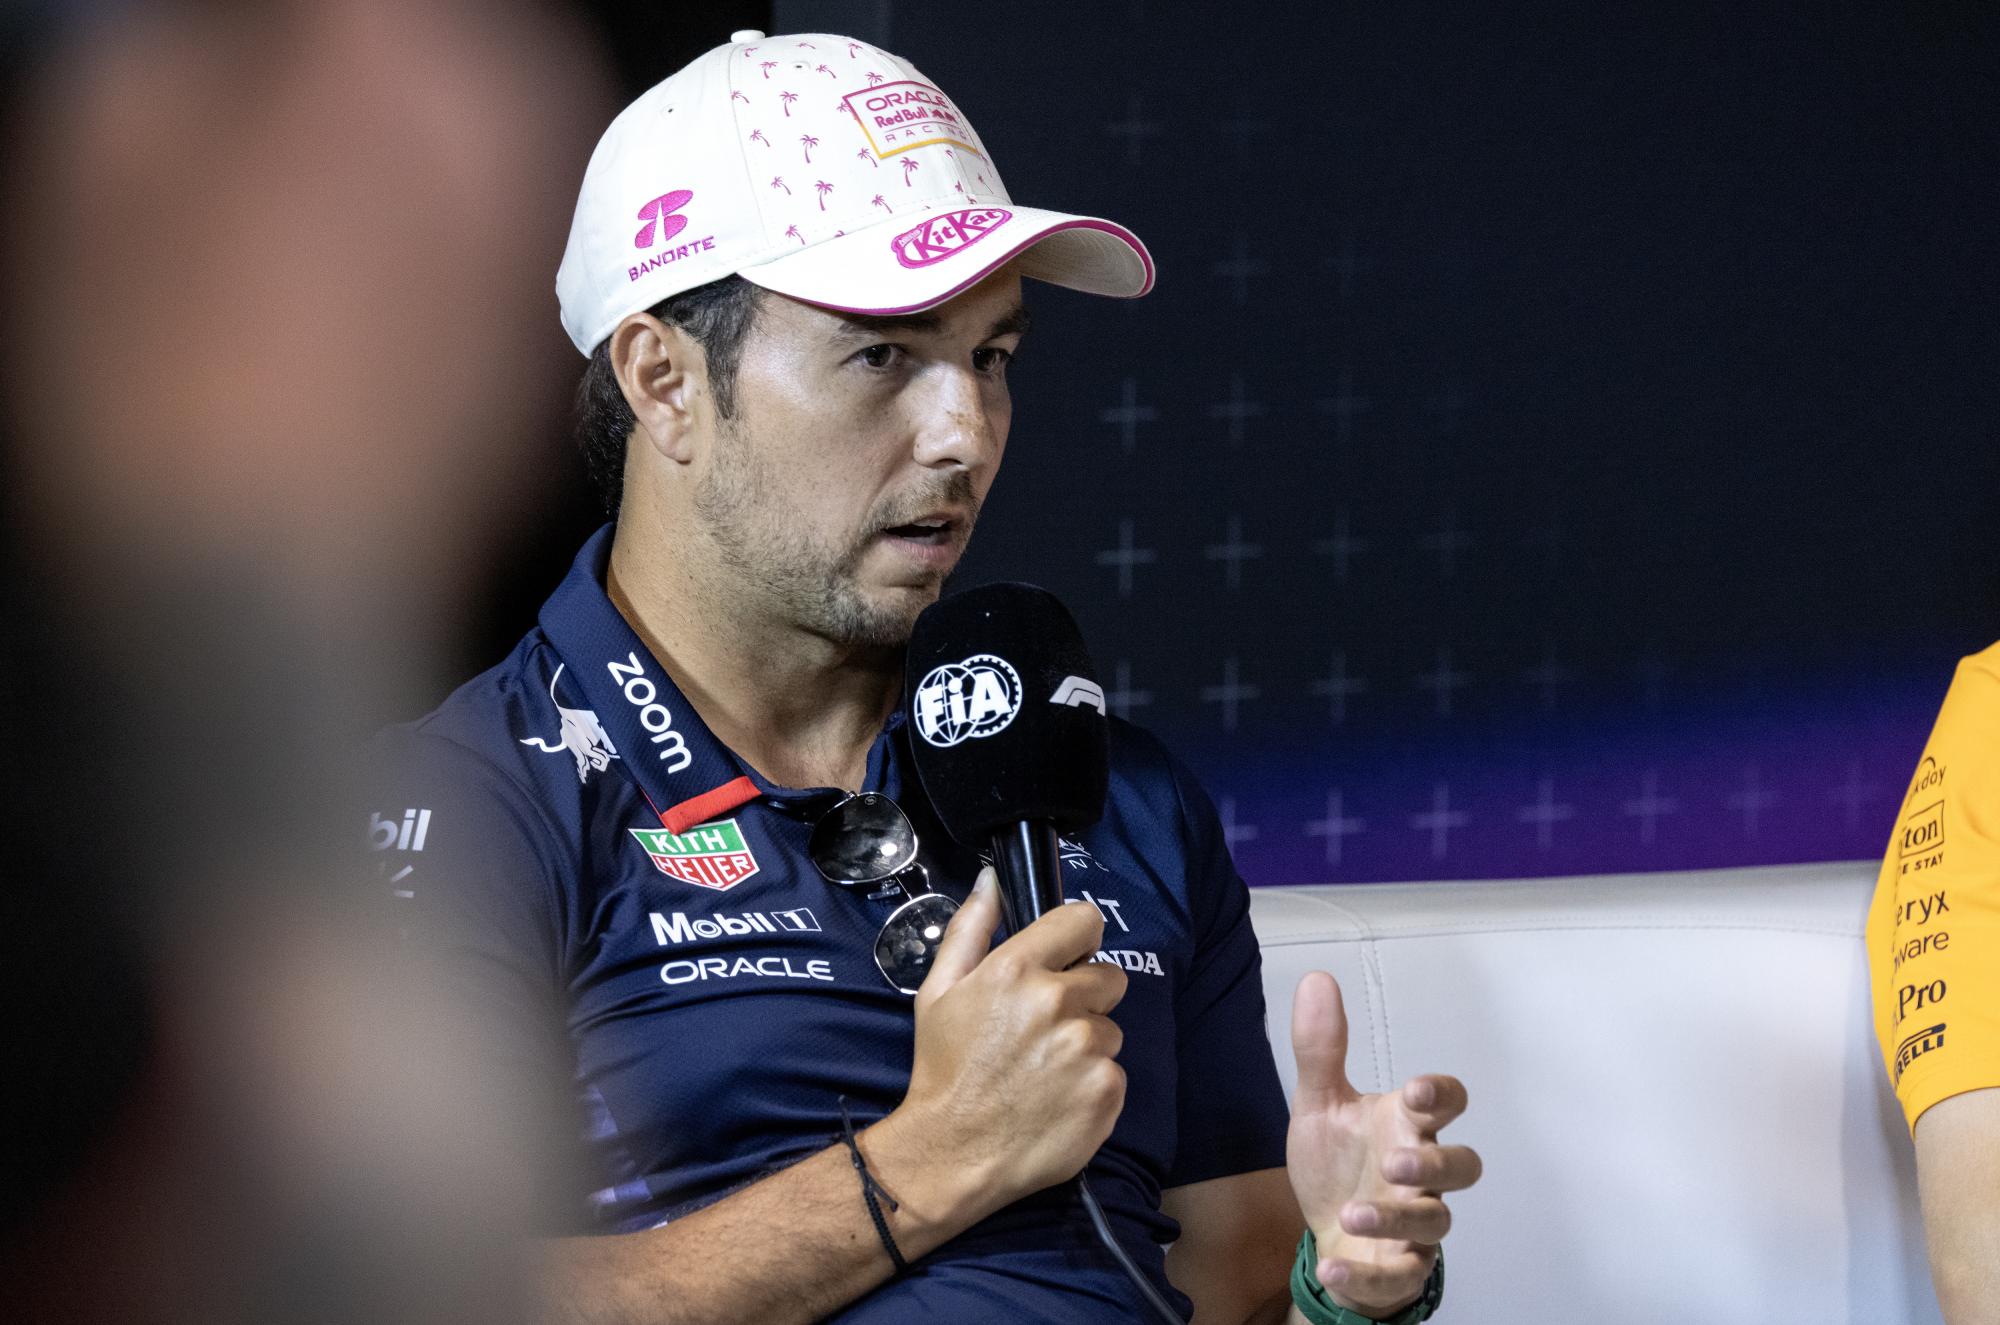 Revela Checo Pérez que ‘en breve’ definirá su futuro en la F1. Noticias en tiempo real